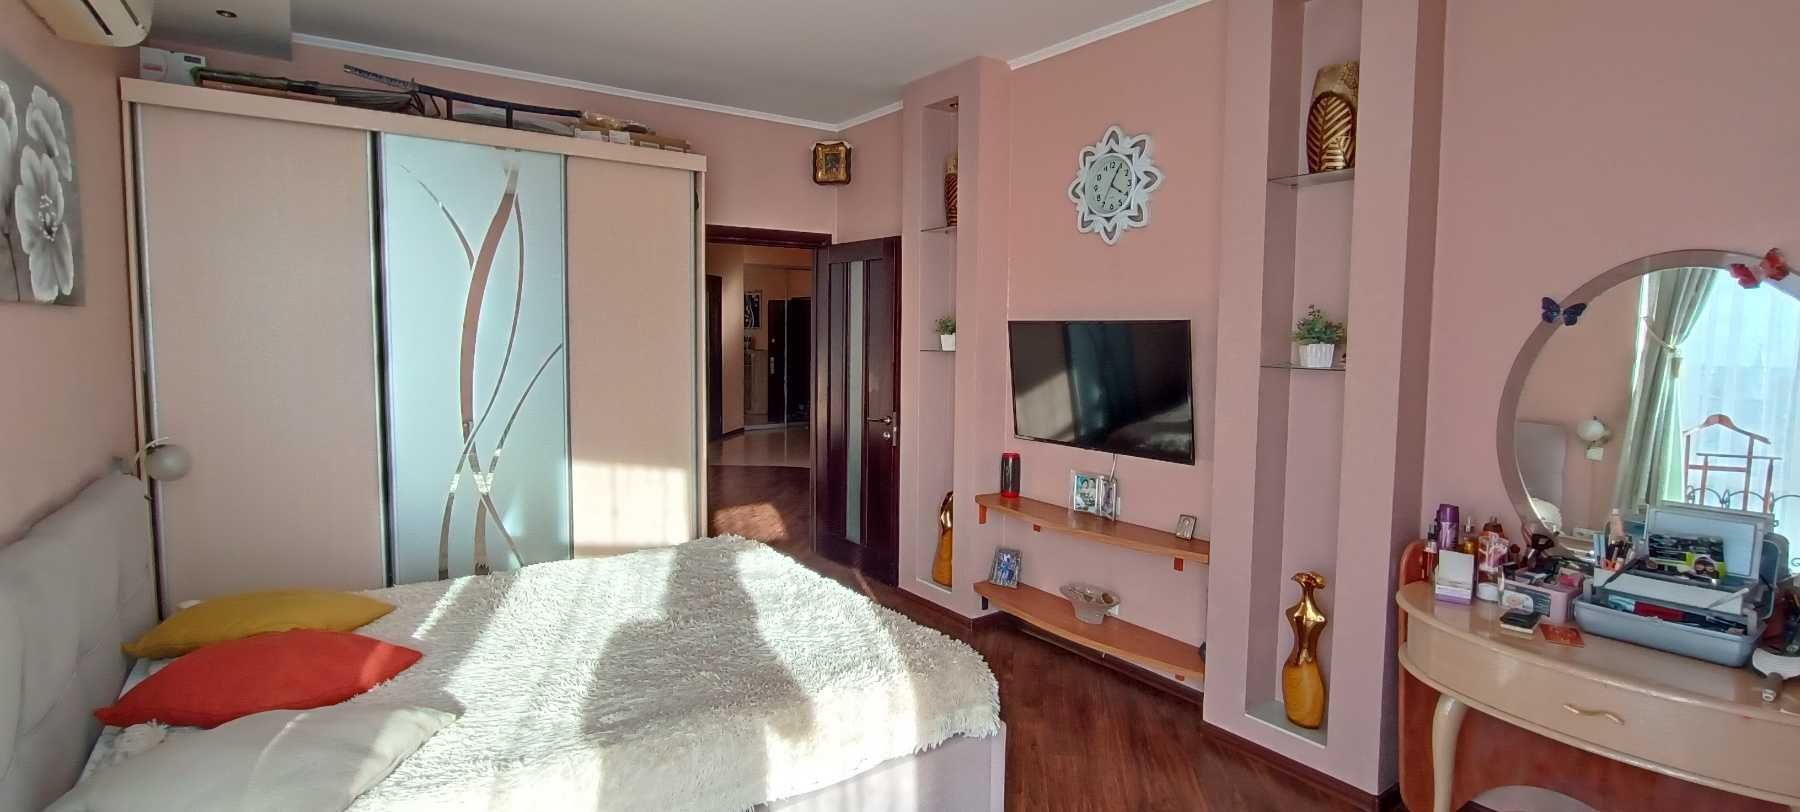 Продам, 2- комнатную квартиру, в ЖК "7 Самураев", с ремонтом